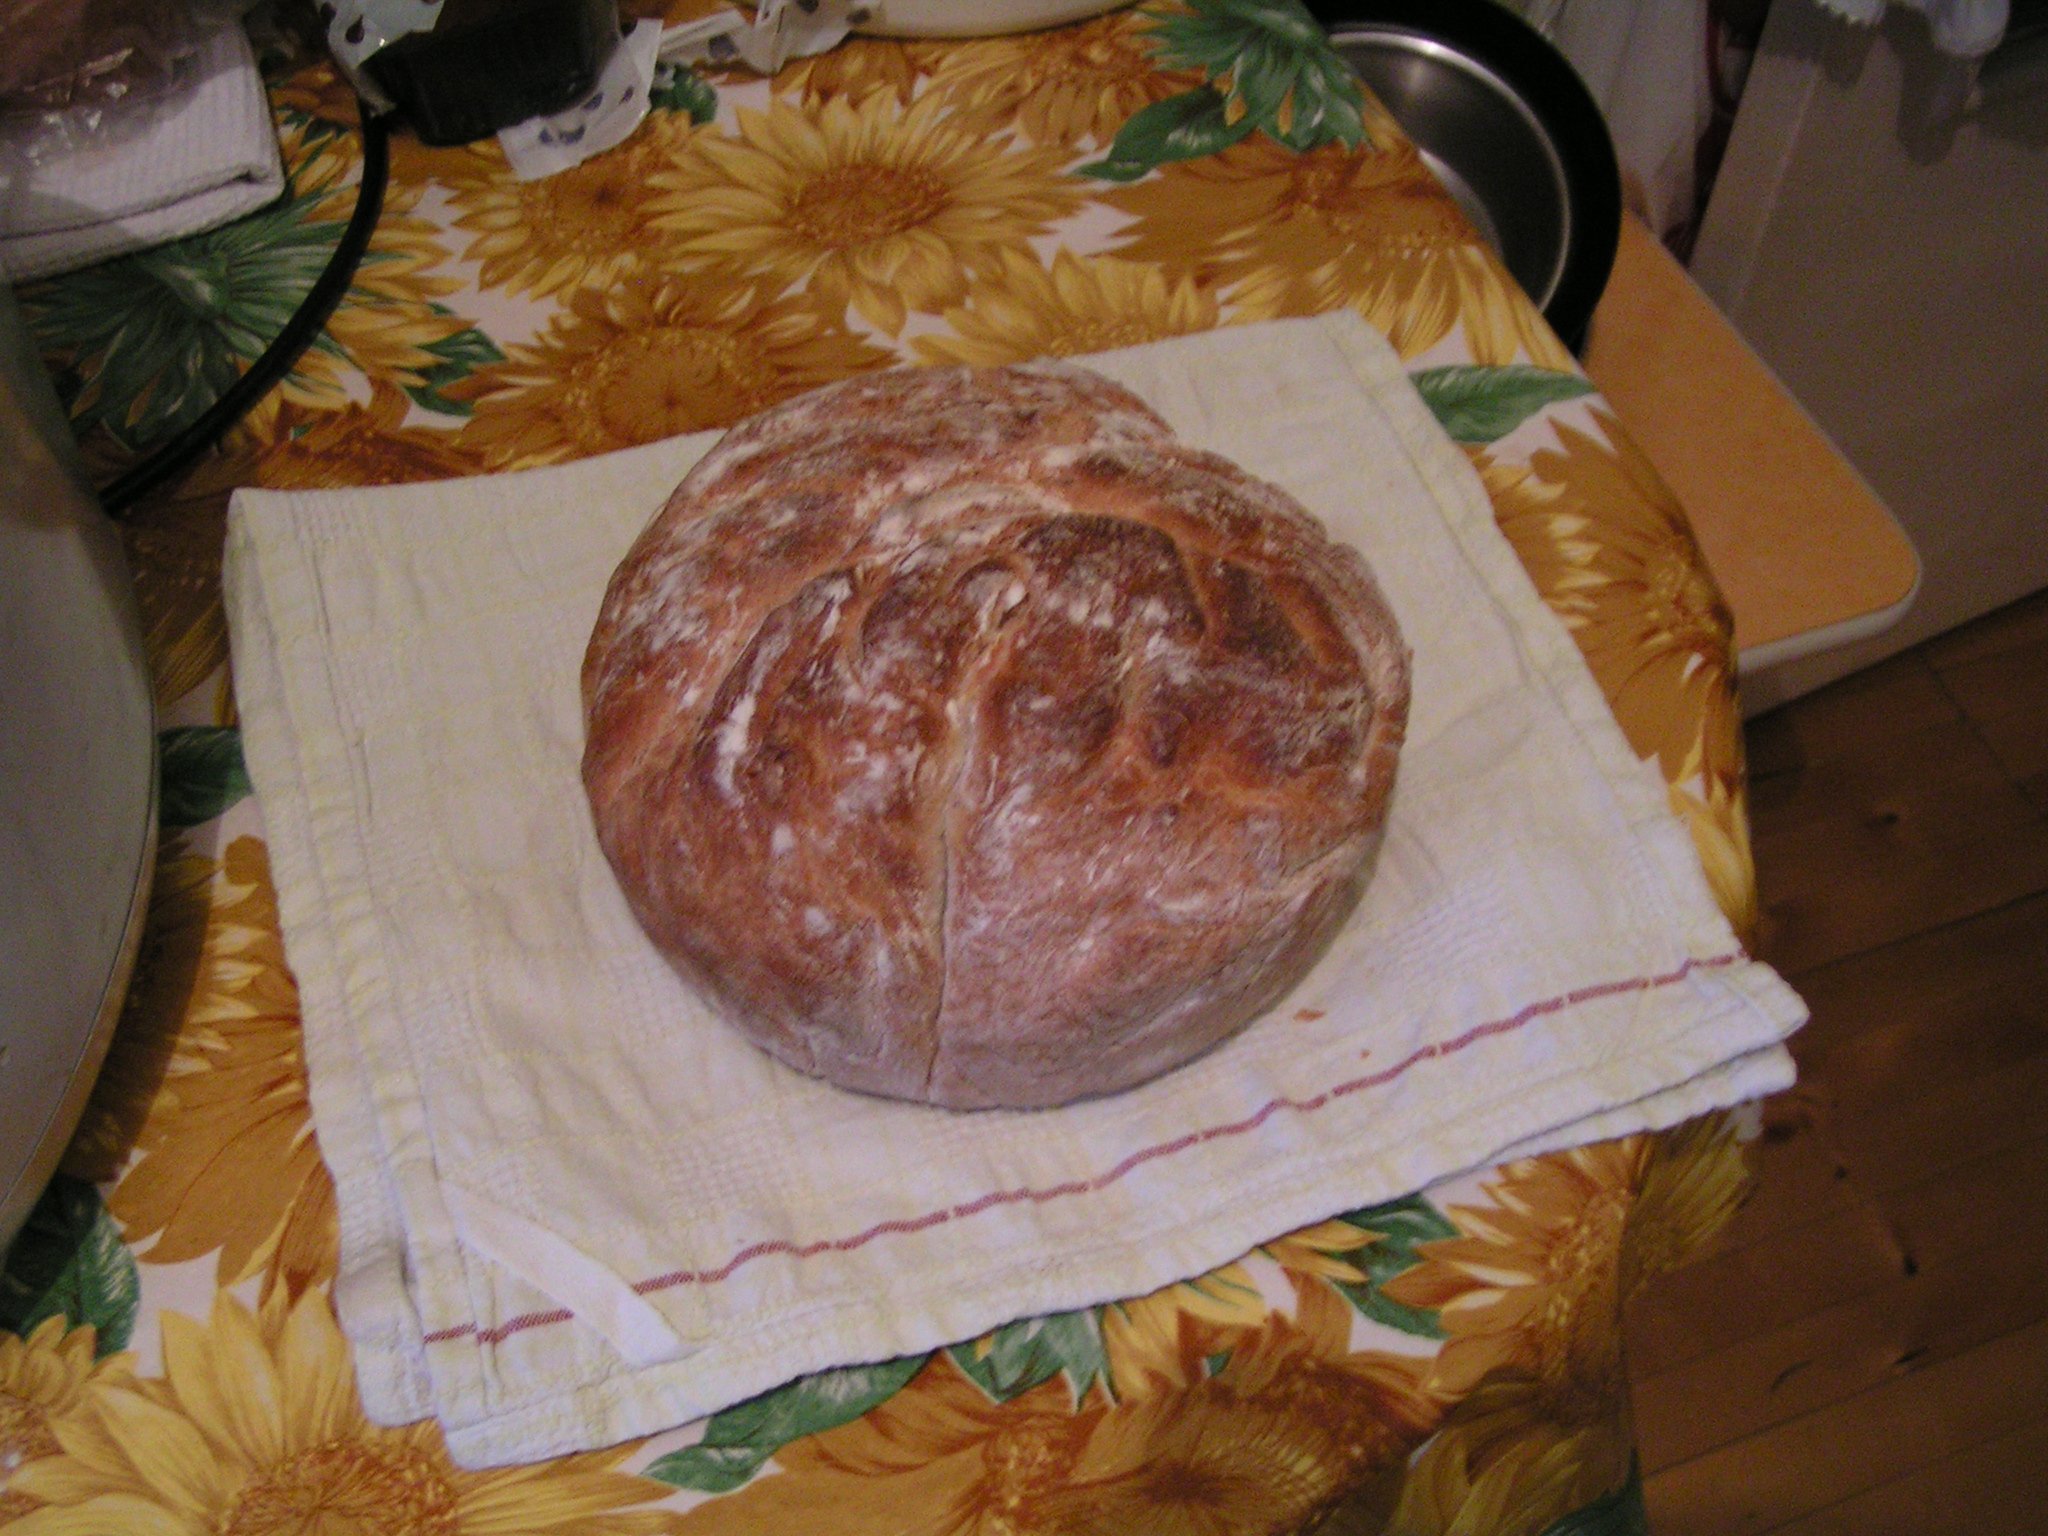 כיכר לחם מהתבנית (תנור)